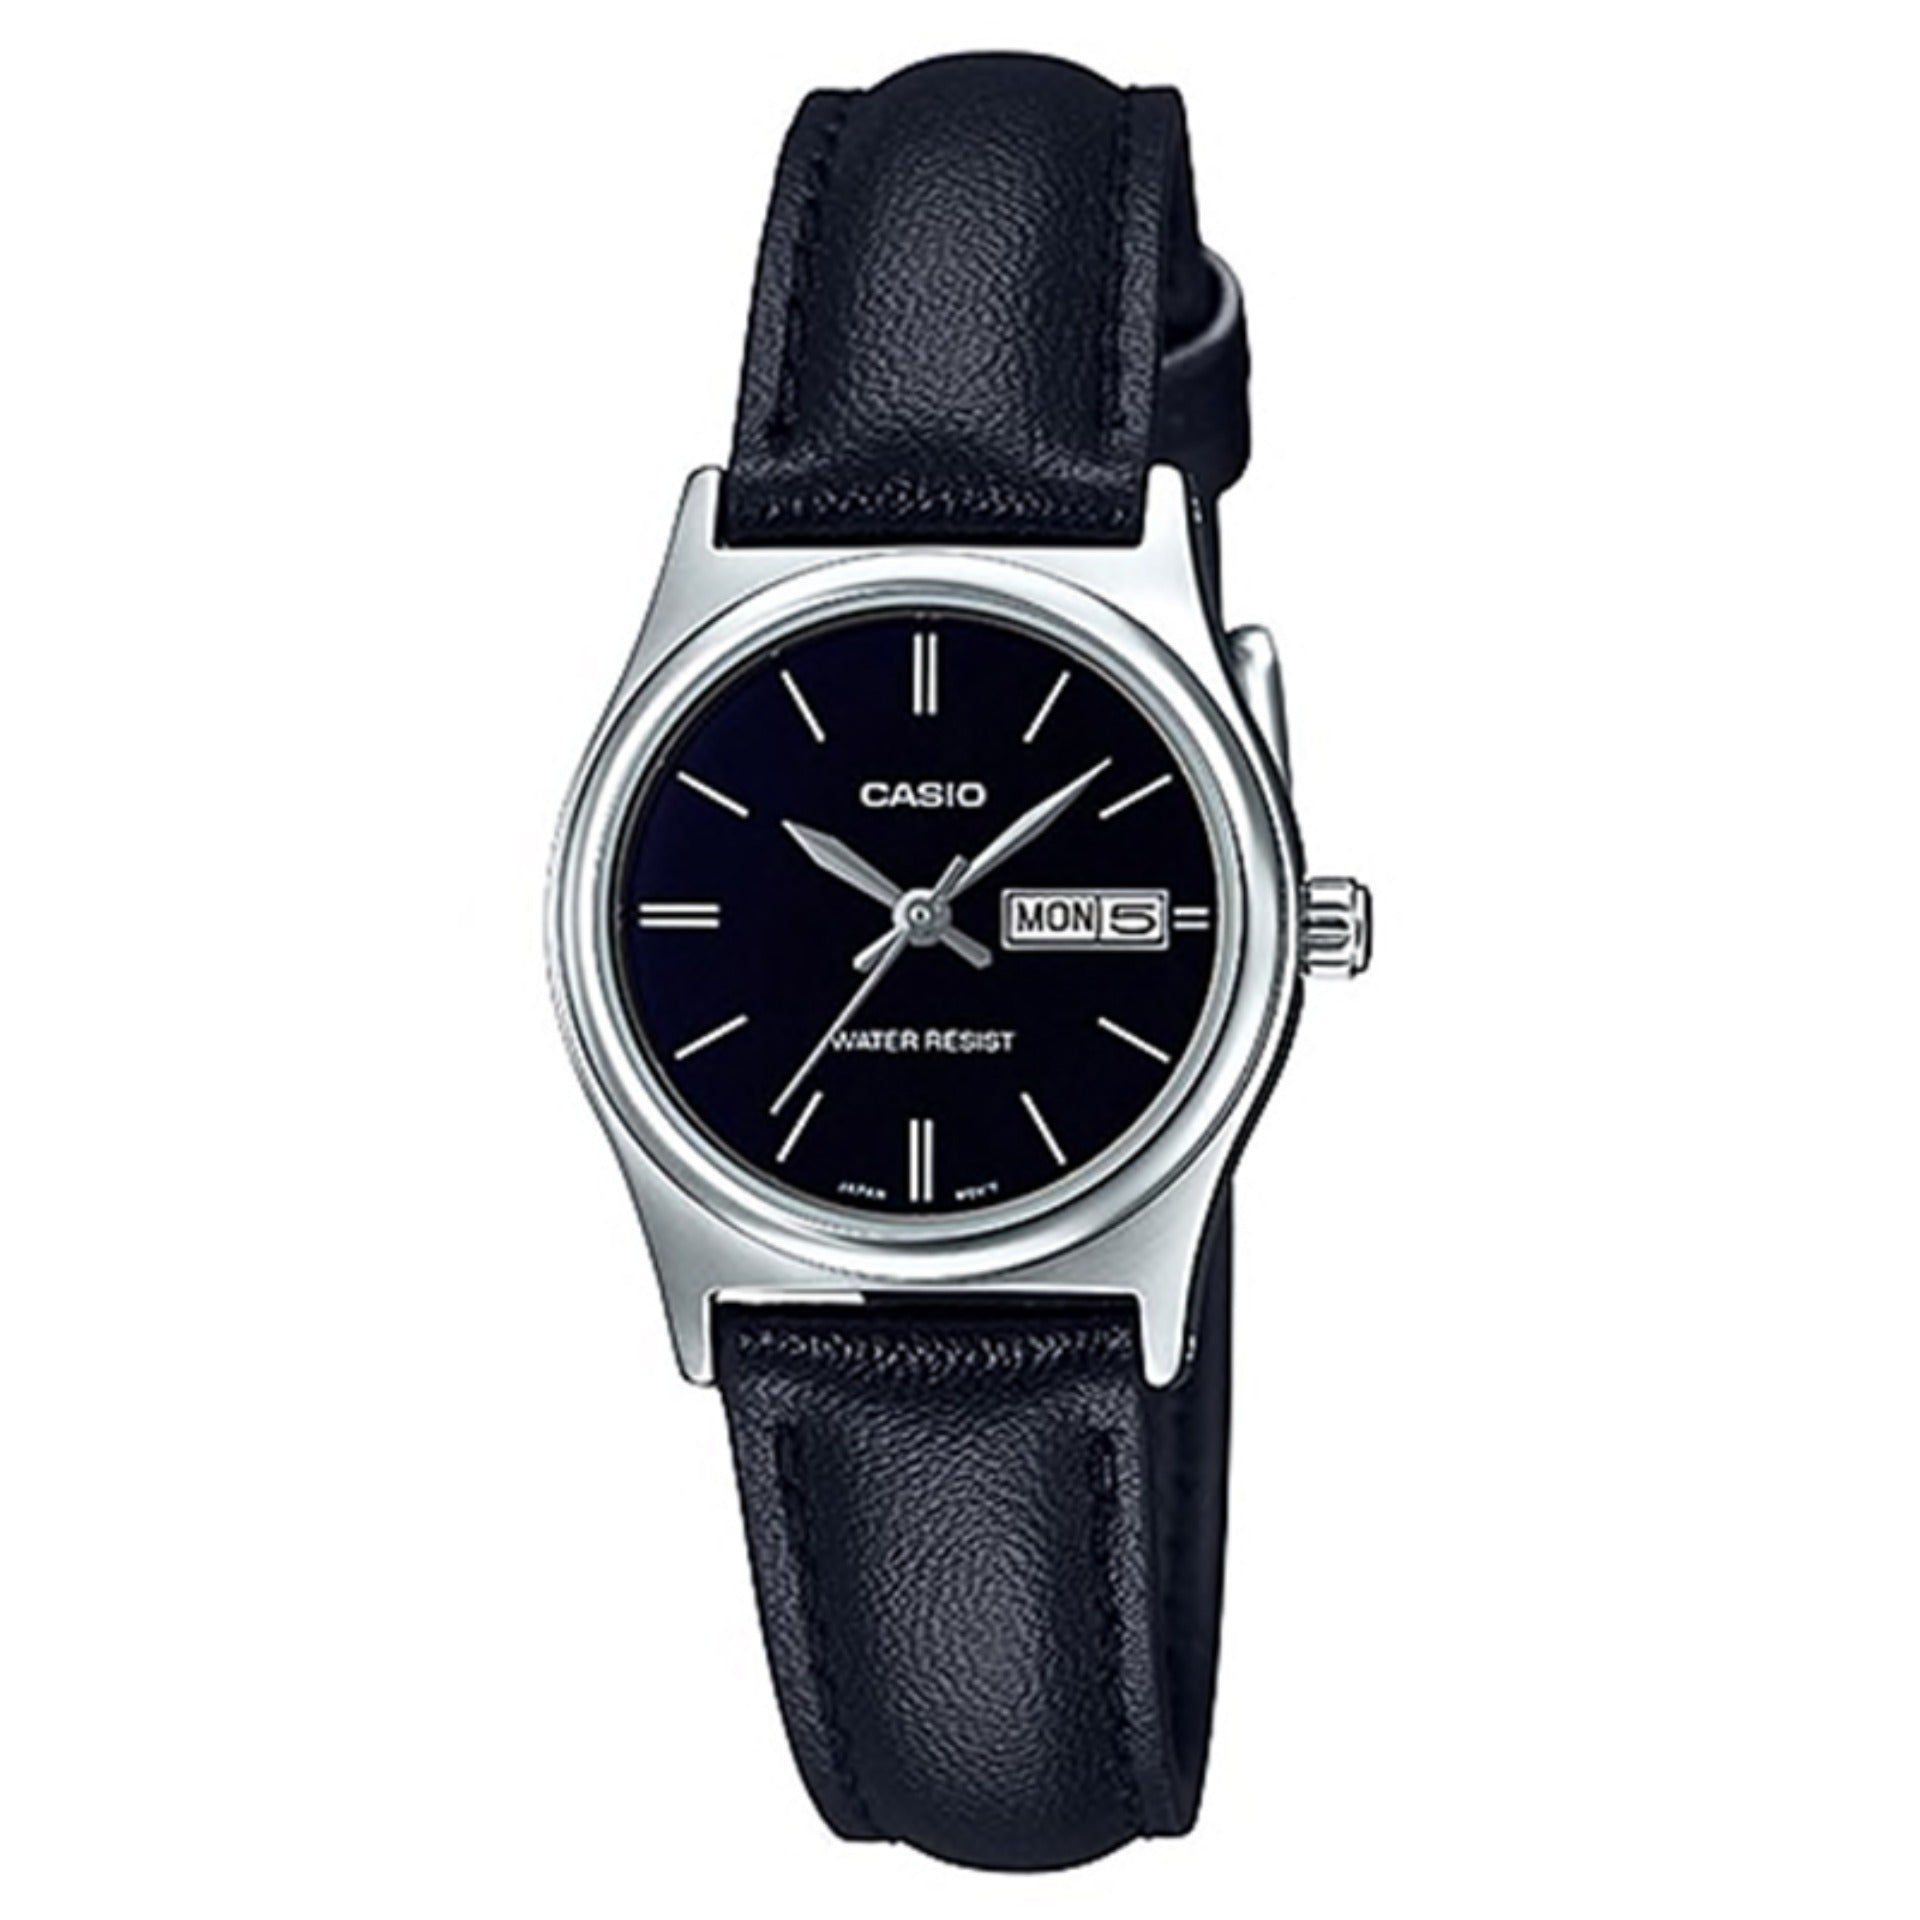 Casio Ladies' Standard Analog Black Leather Strap Watch LTPV006L-1B2 LTP-V006L-1B2 Watchspree